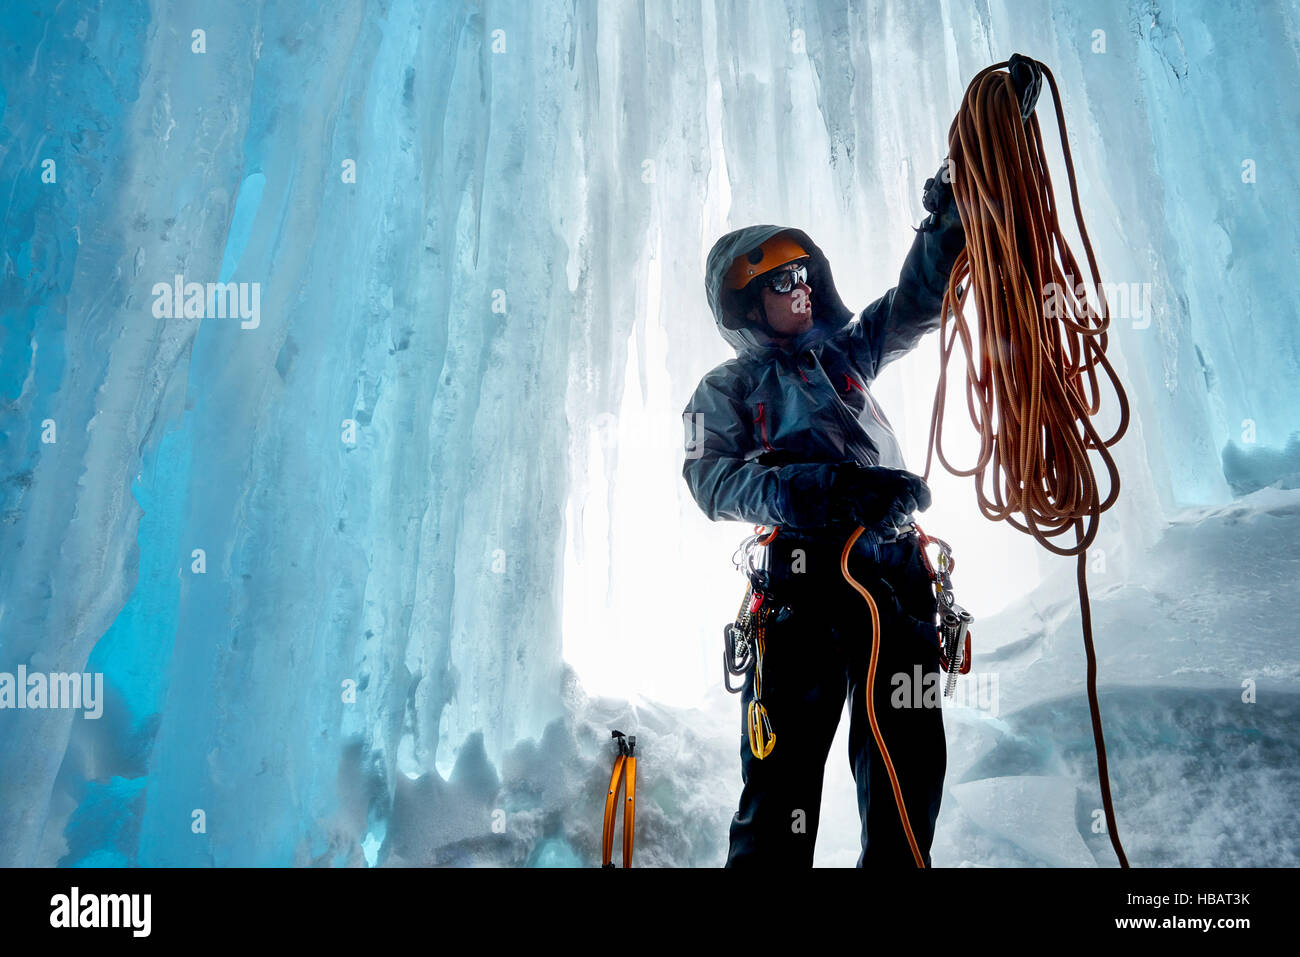 El hombre en la cueva de hielo preparando la cuerda de escalada, Saas Fee, Suiza Foto de stock